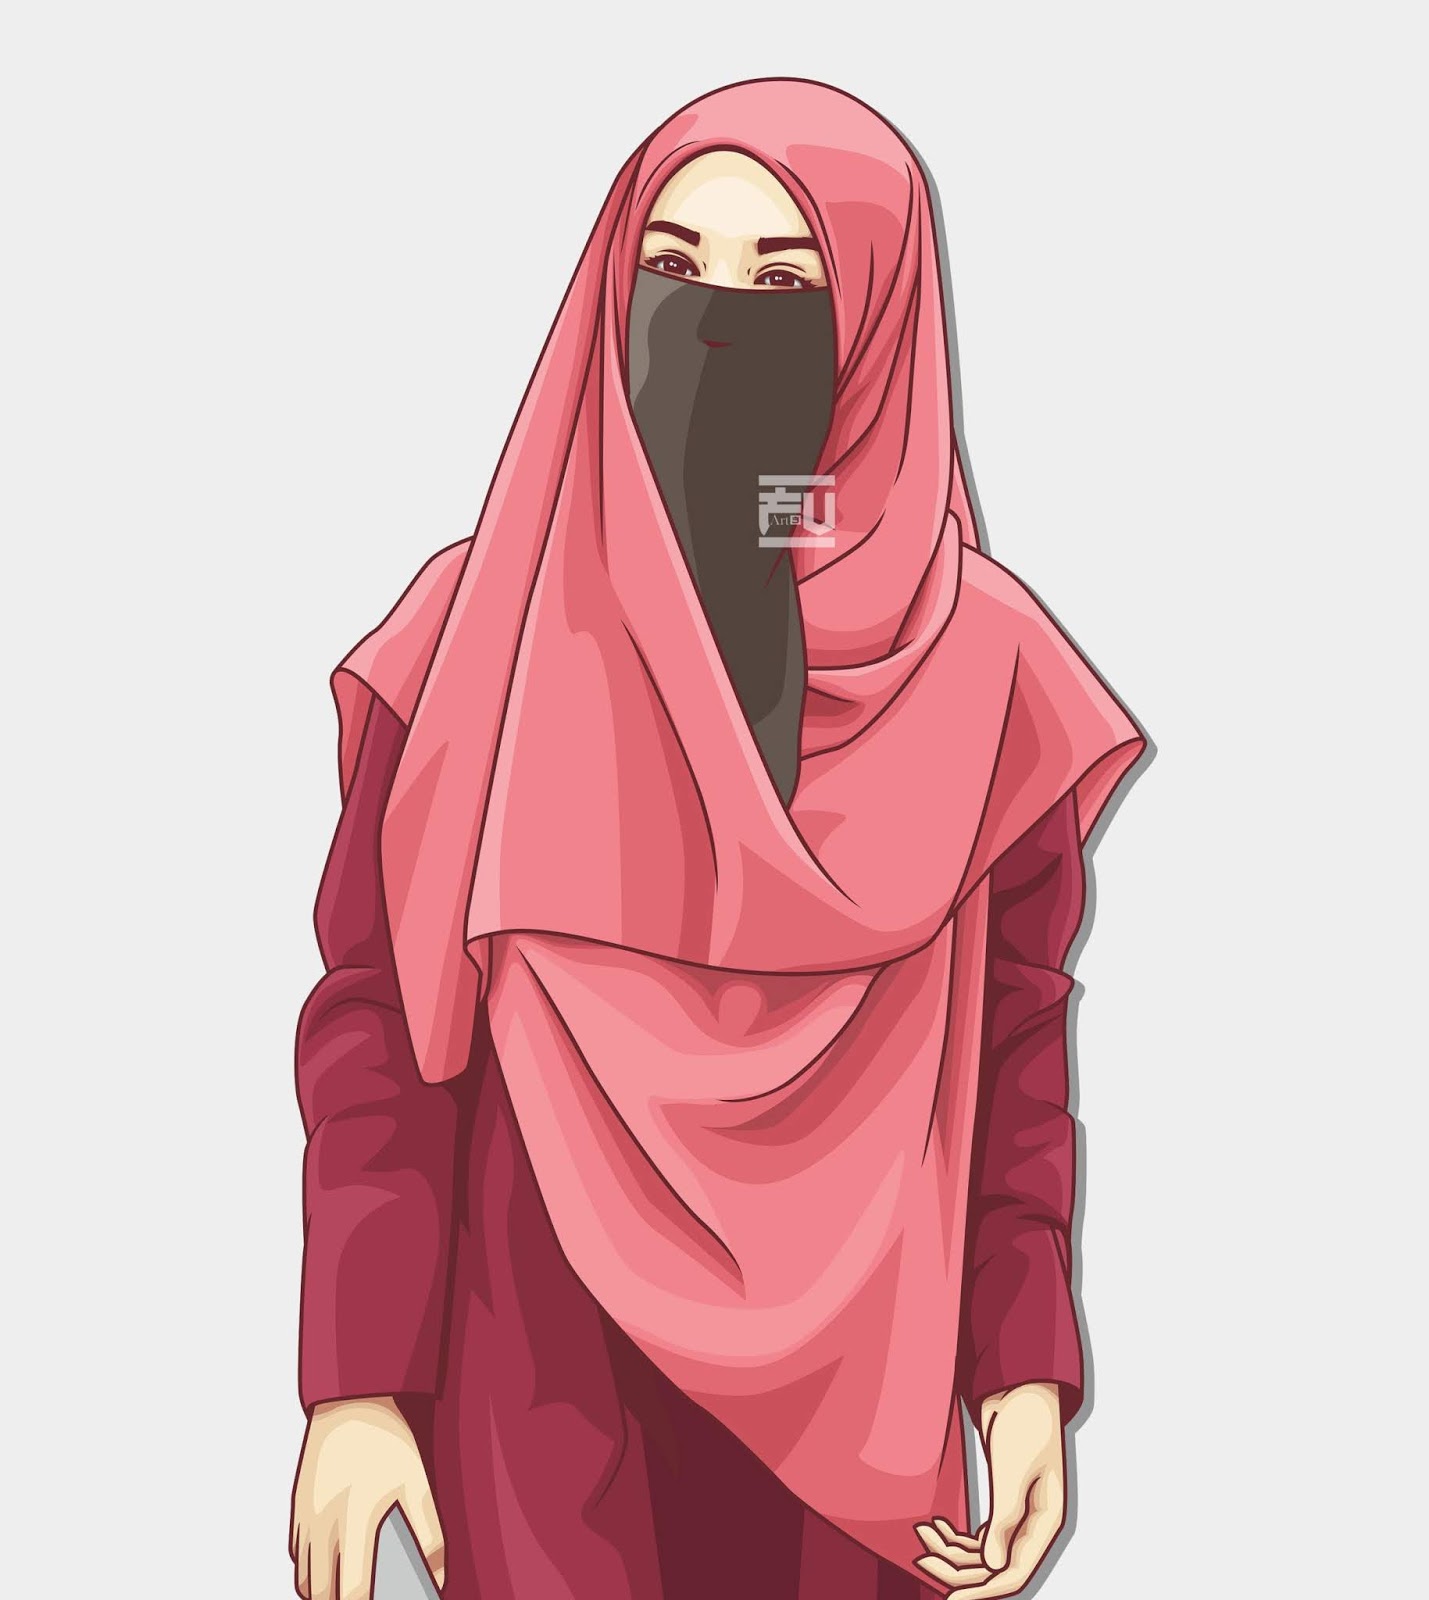 kumpulan anime kartun muslimah bercadar terbaru - Blog Ely ...